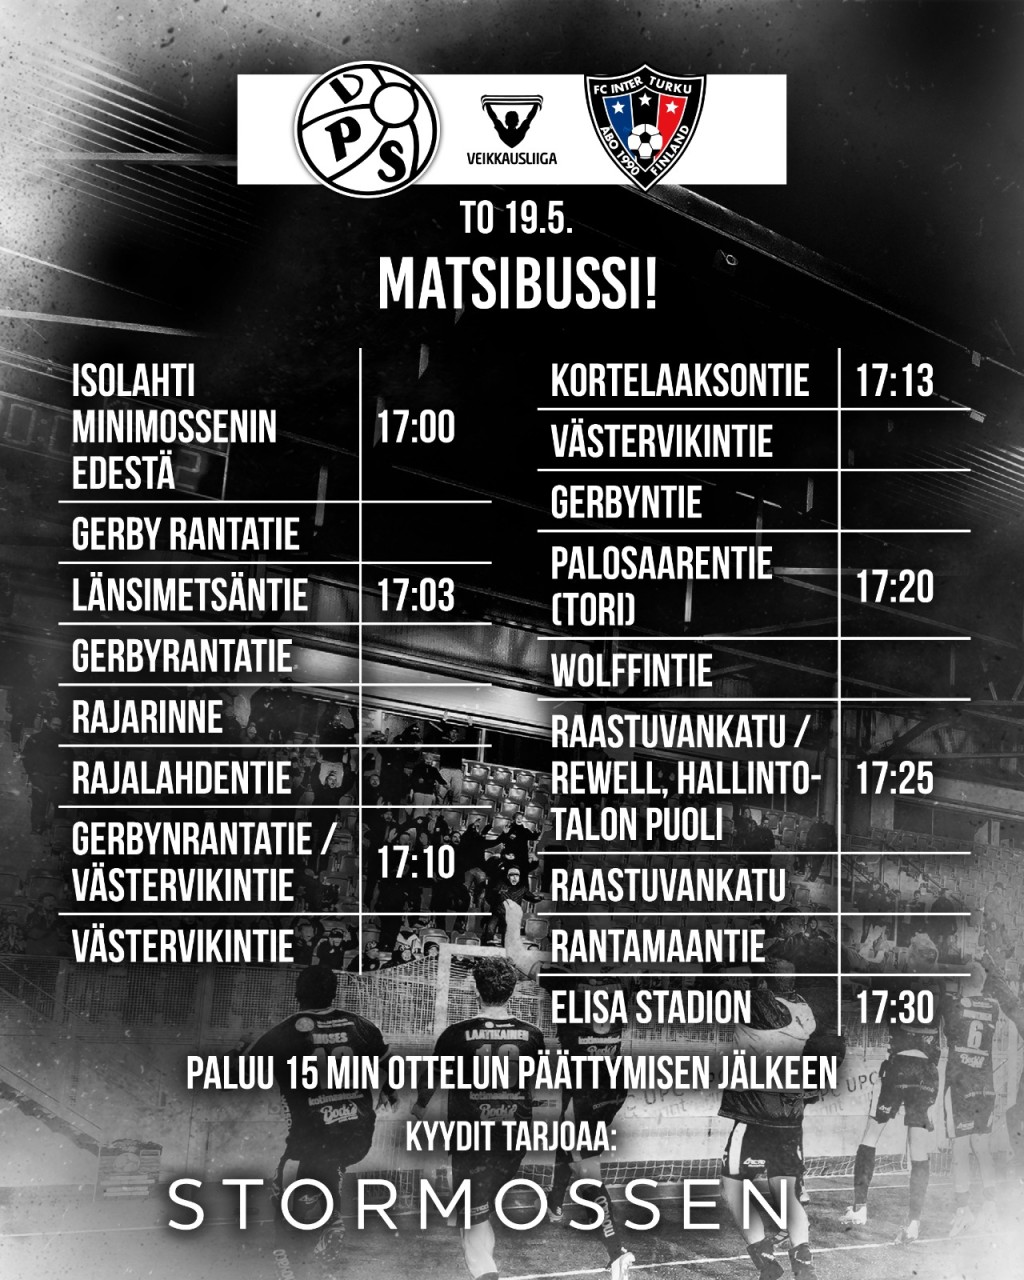 MATSIBUSSI VPS- FC INTER OTTELUUN